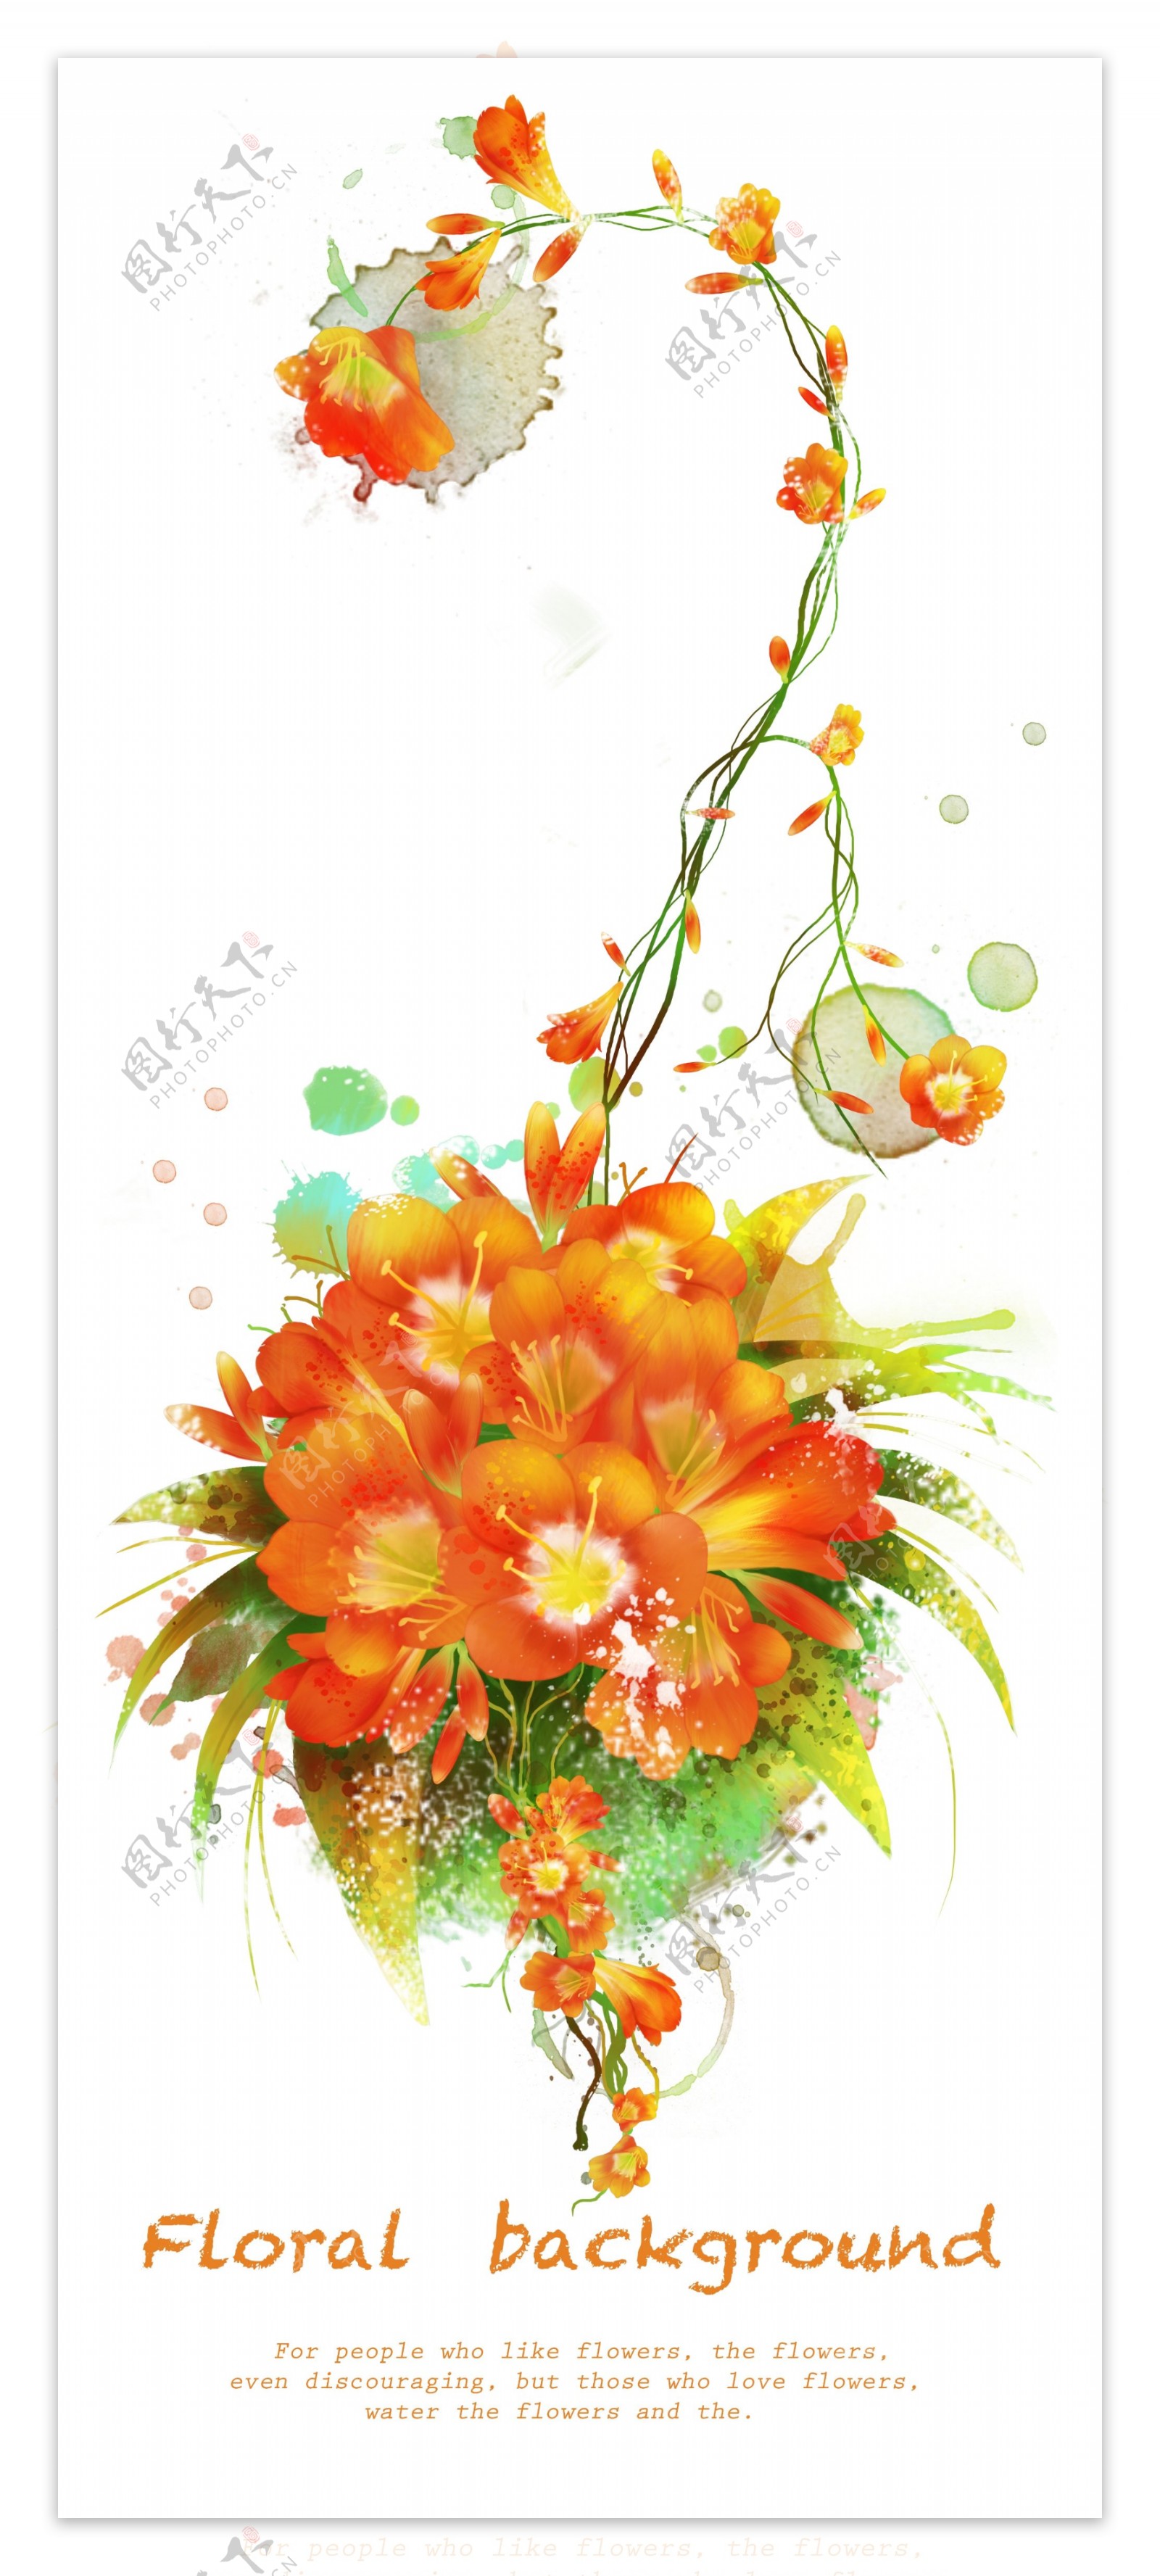 橘色花卉装饰背景图源文件